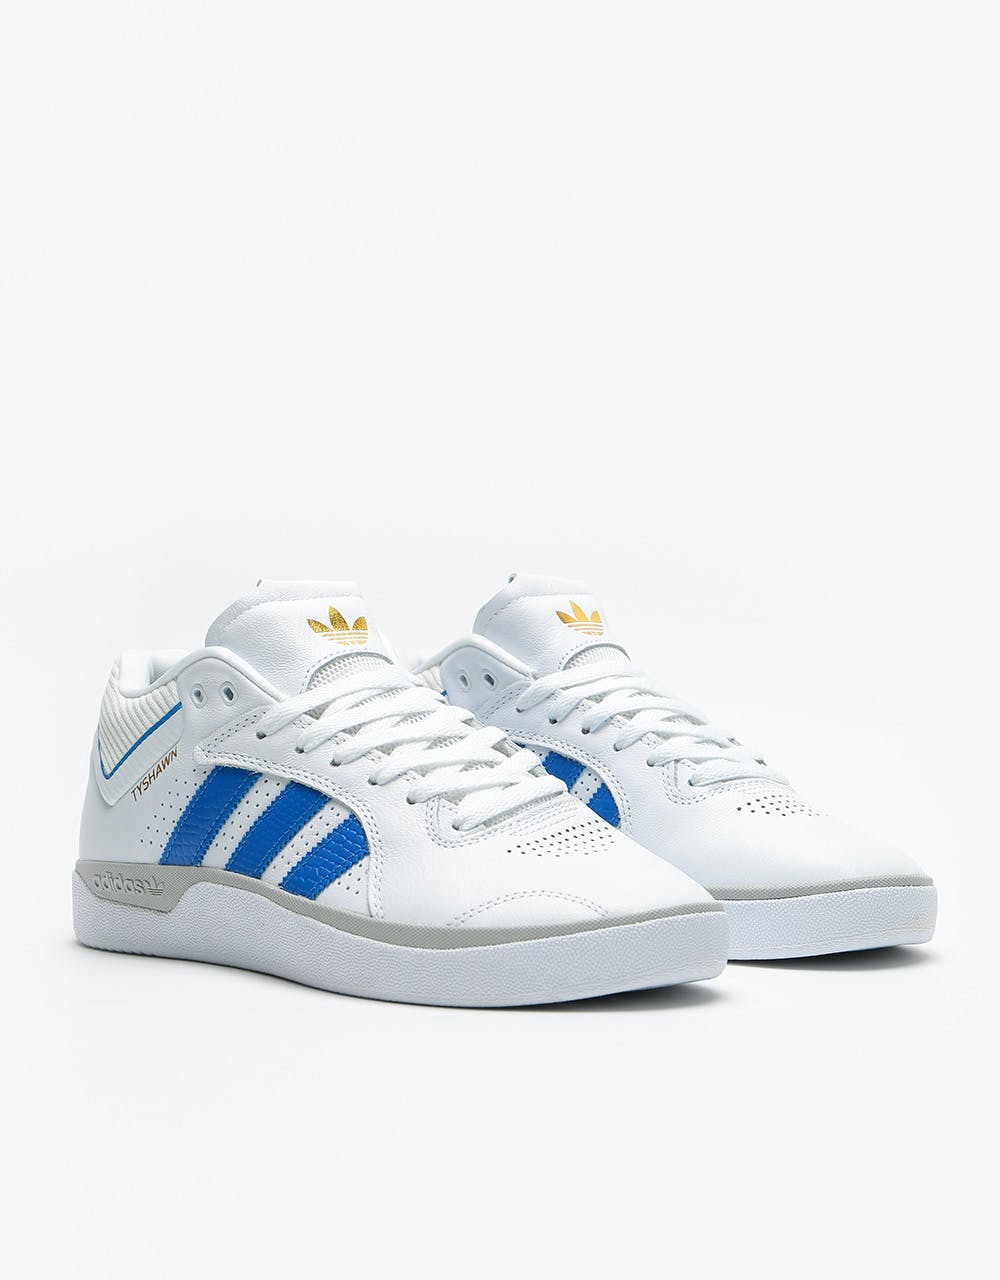 Adidas Tyshawn Skate Shoes - White/Blue/Gold Metallic